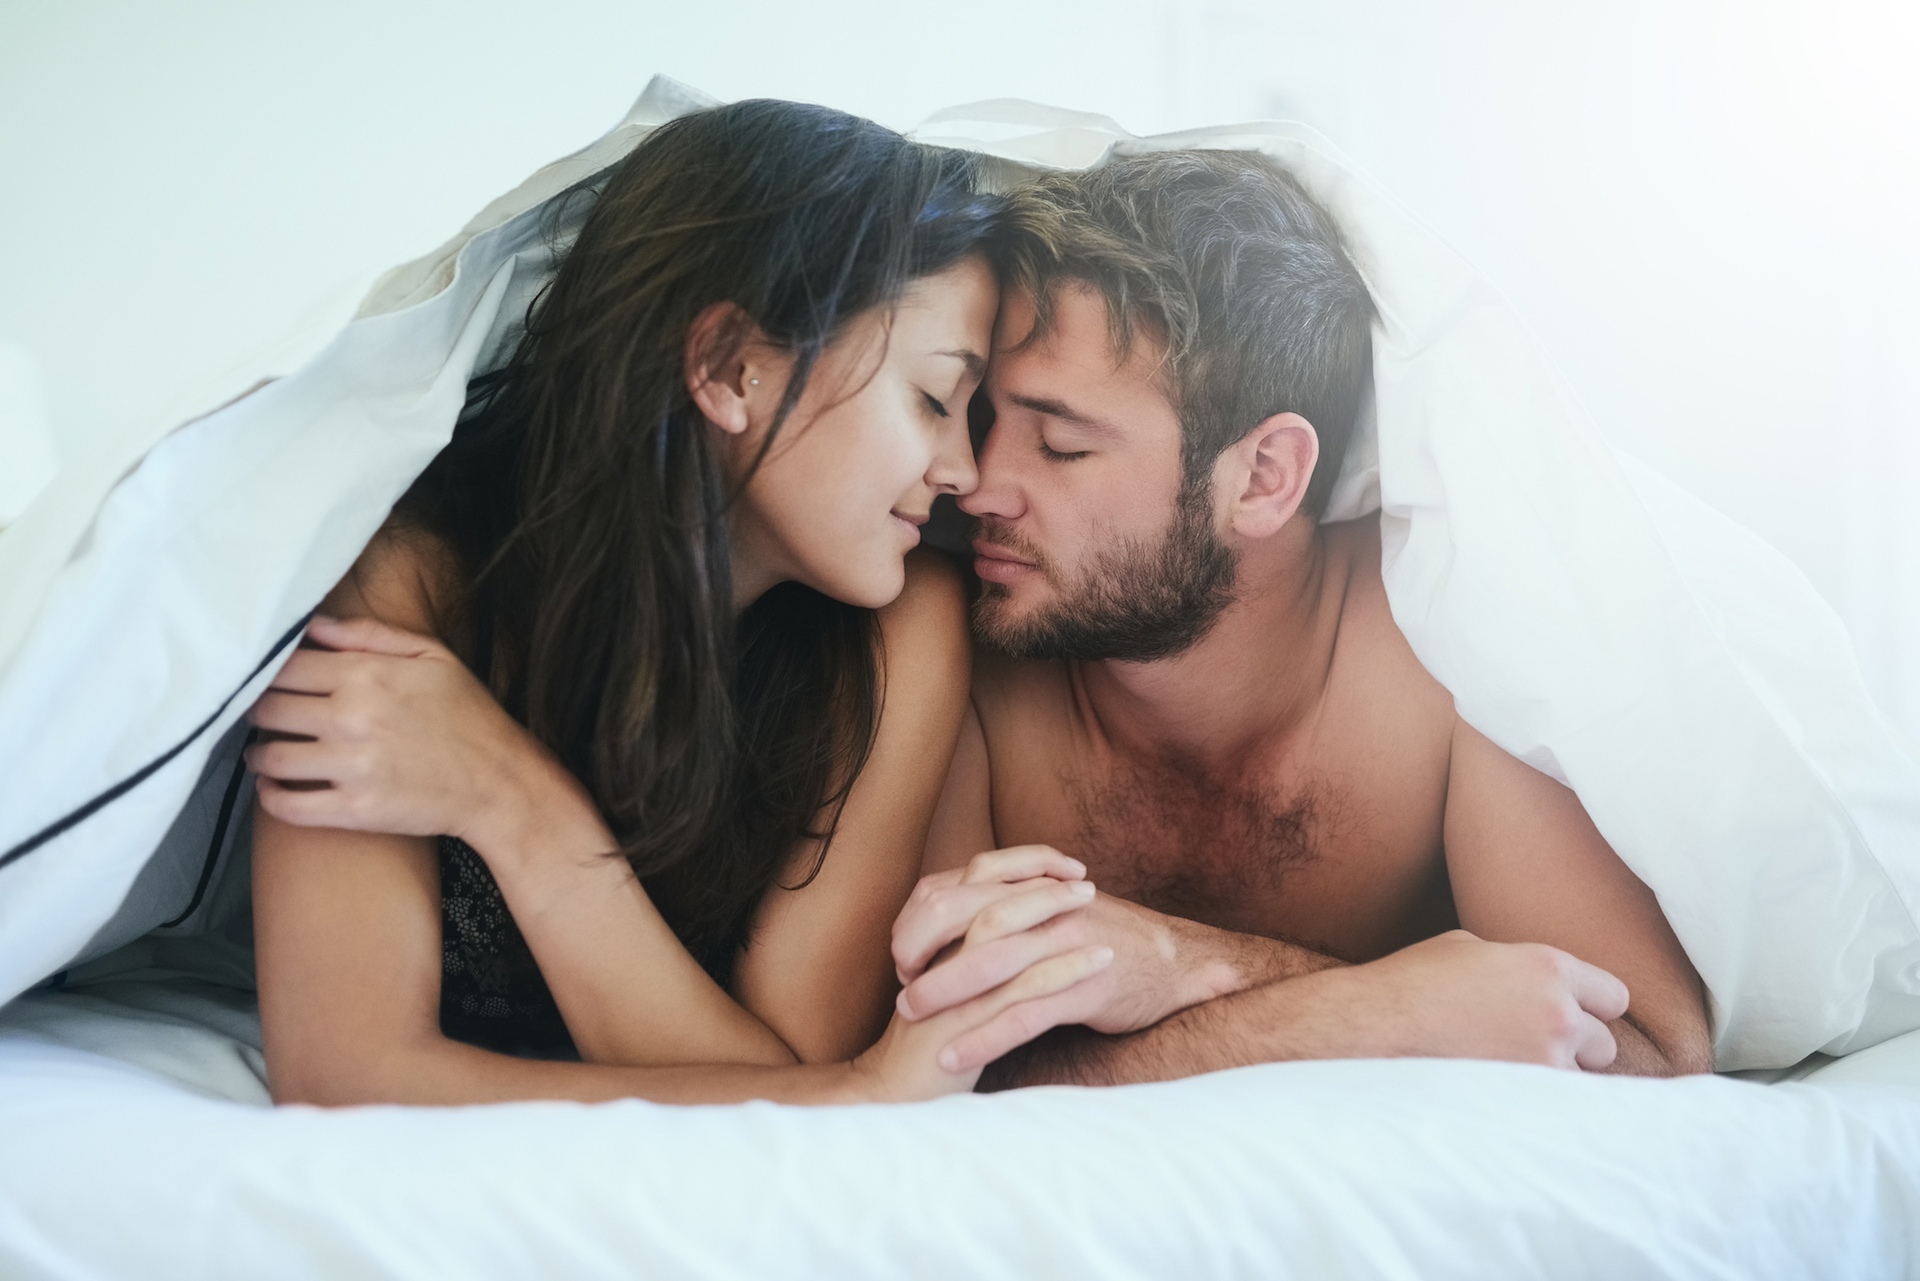 Сайт знакомств для секса ЧистоСекс. Доска интим объявлений без регистрации бесплатно